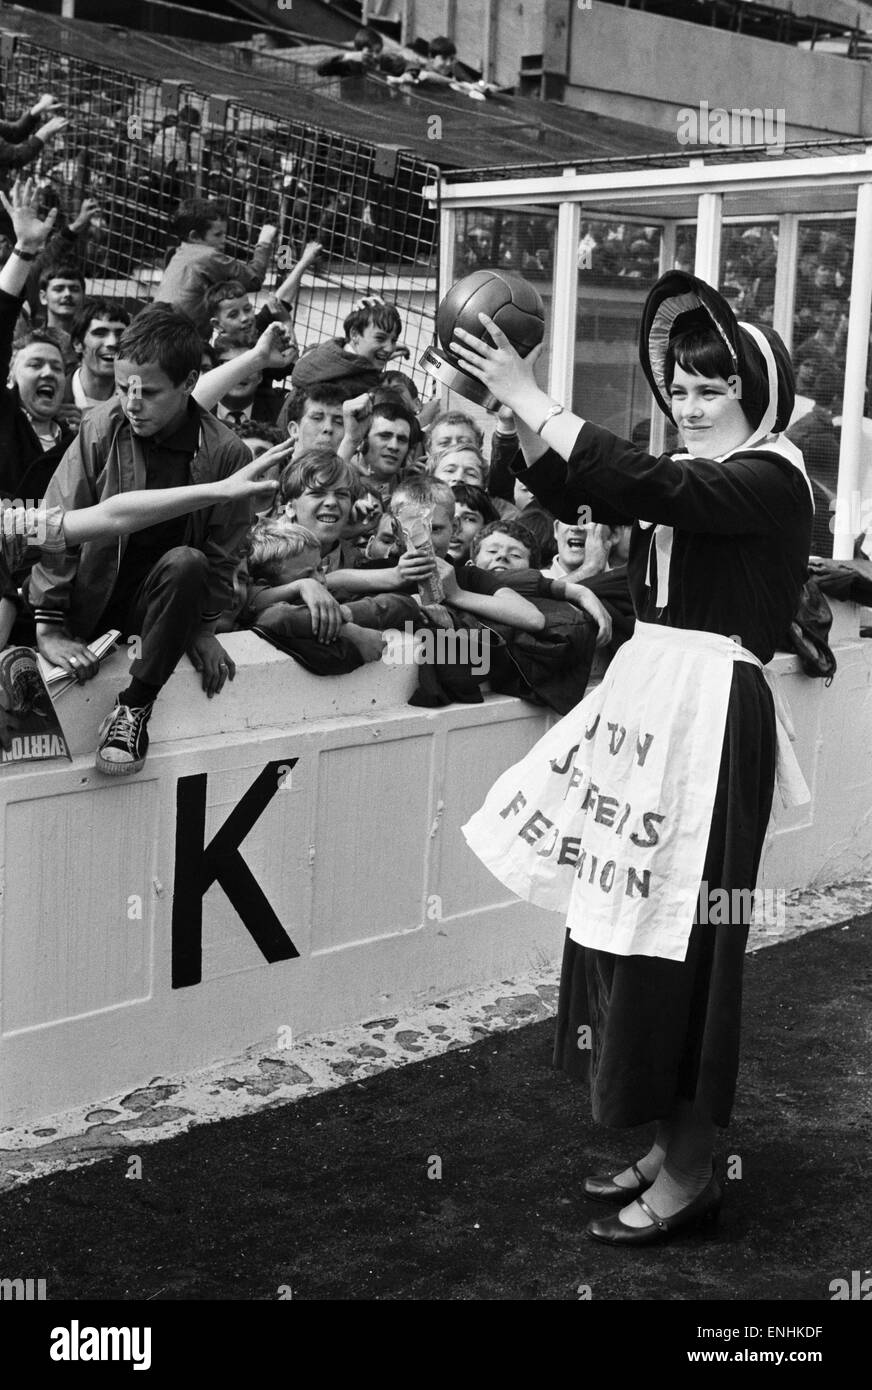 Everton toffee lady, 16 anni di Catherine Dunn, detiene un trofeo consegnato a Everton sostenitori prima della partita contro il Crystal Palace. Il 16 agosto 1969. Foto Stock